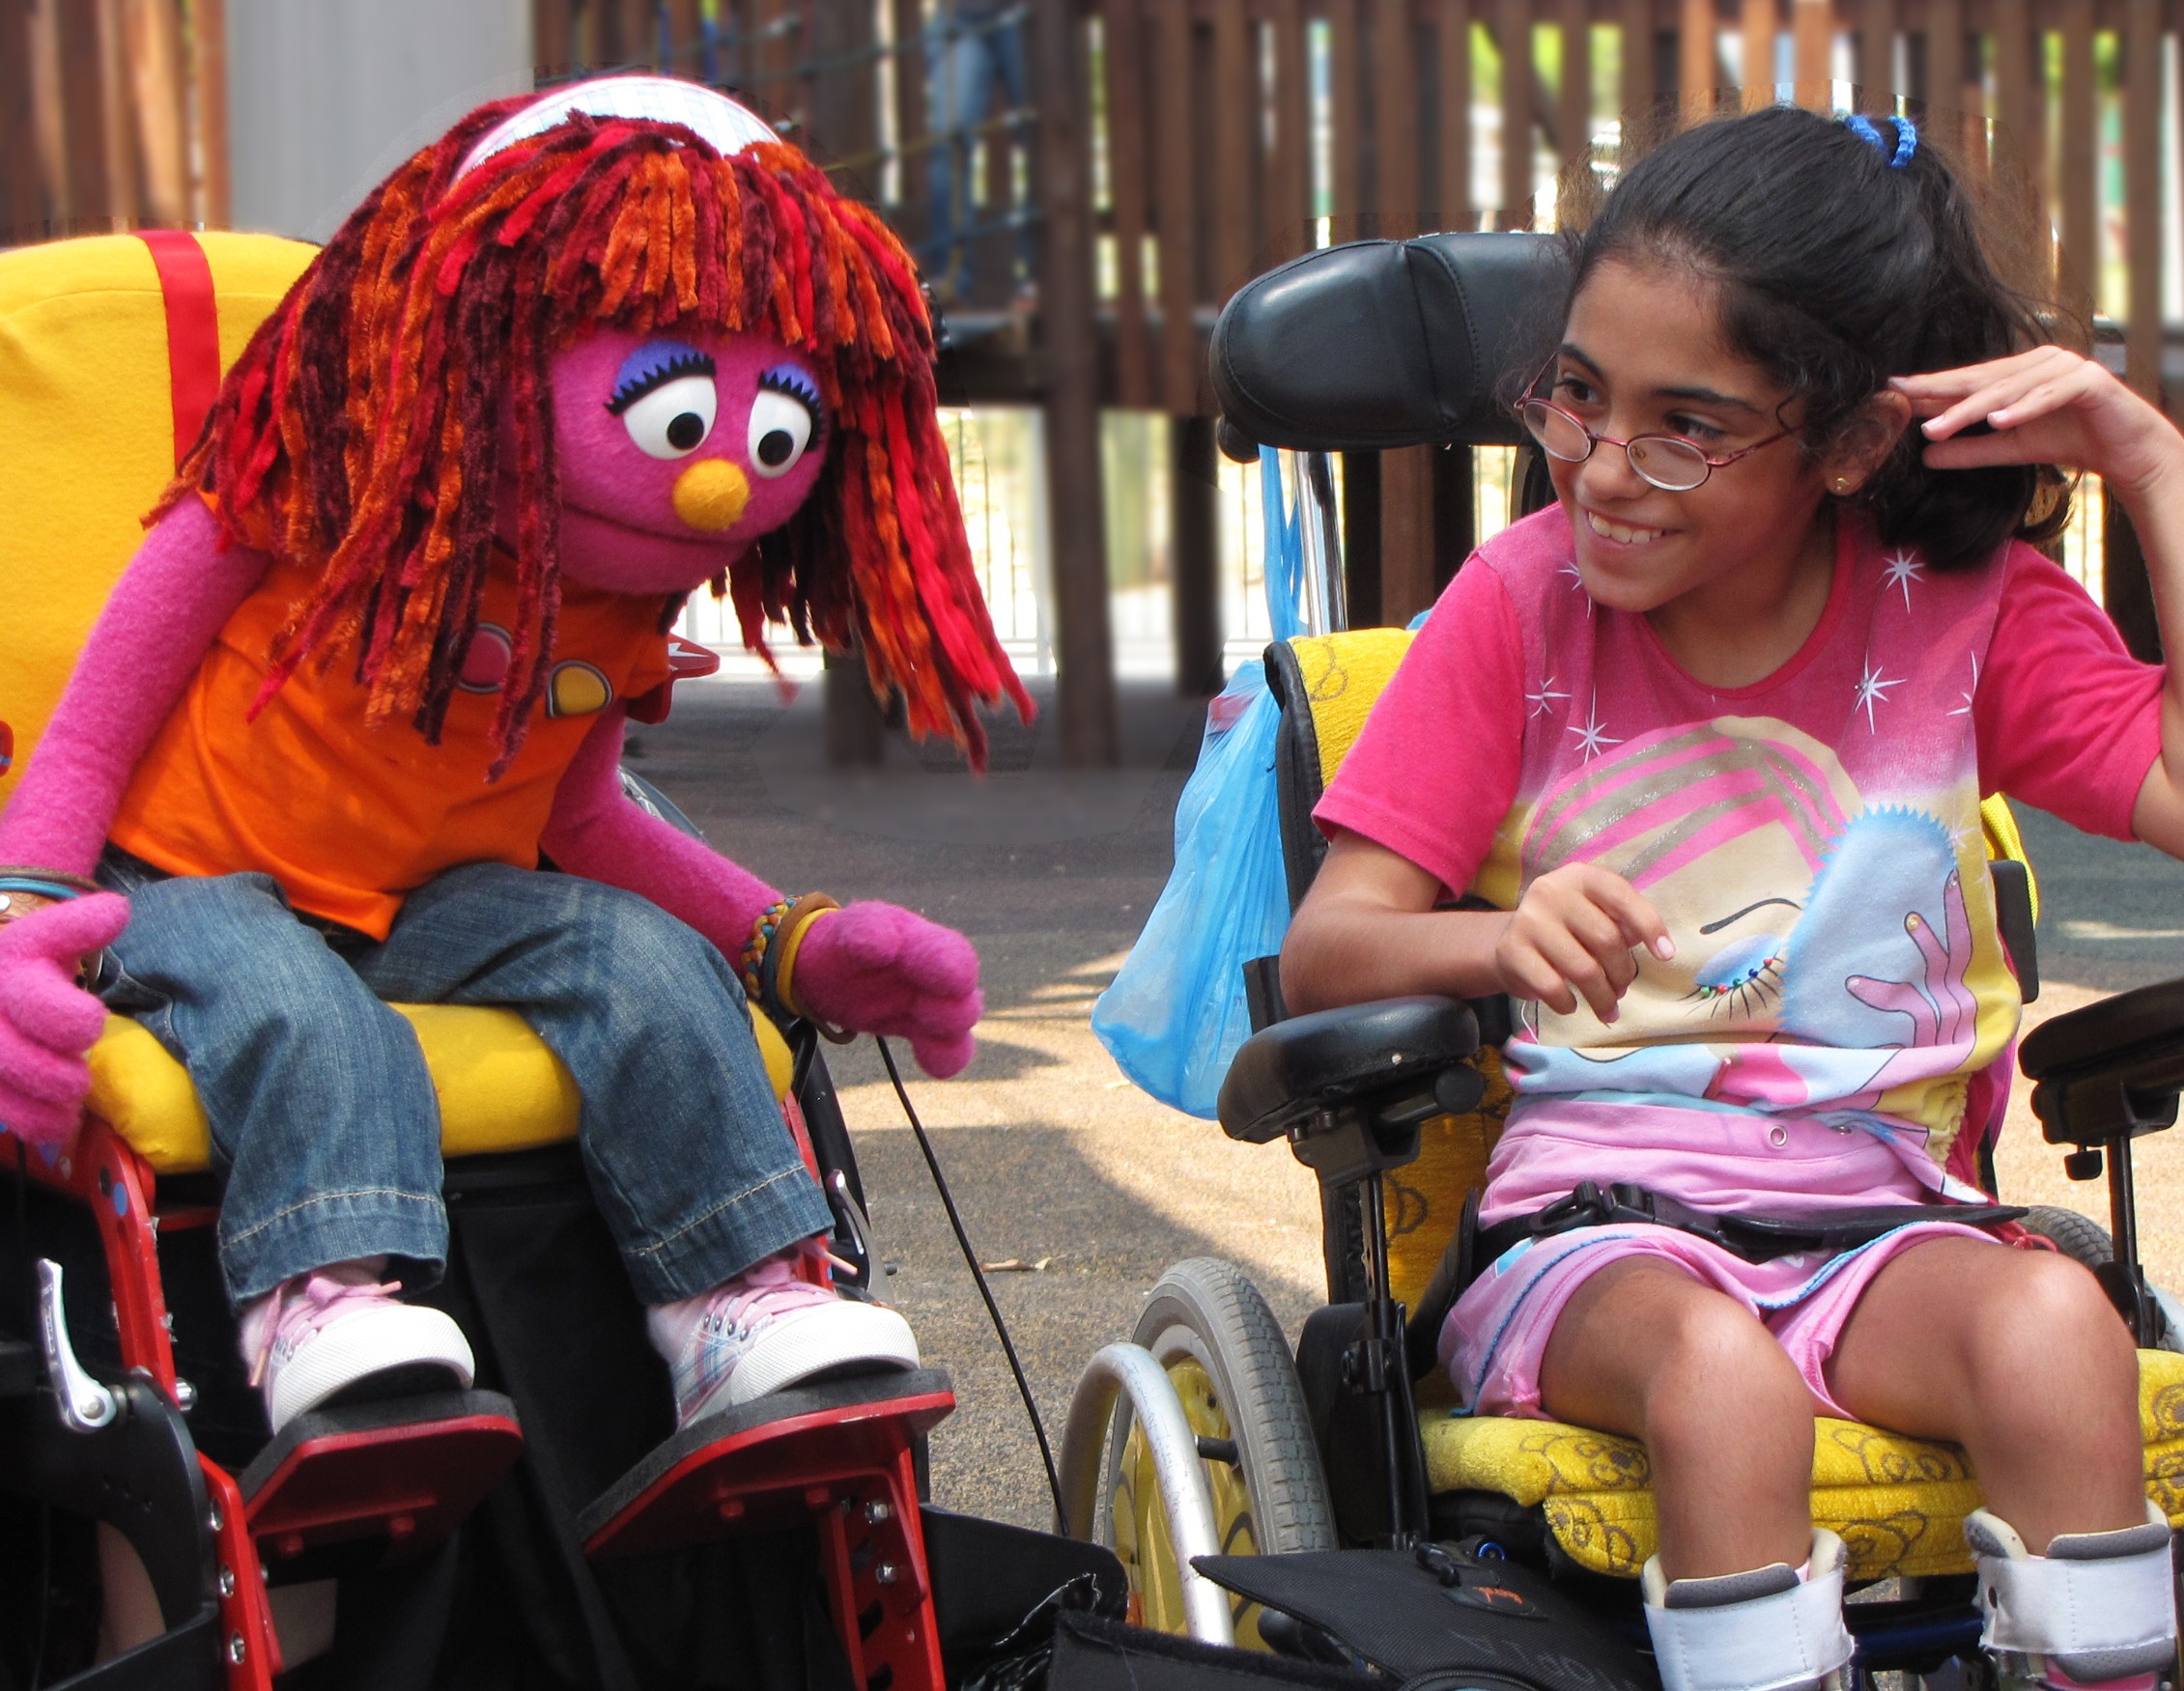 세서미스트리트의 한 장면. 휠체어를 타거나 발달장애가 있는 어린이도 함께 등장해 장애에 대한 거부감을 갖지 않도록 프로그램을 제작했다